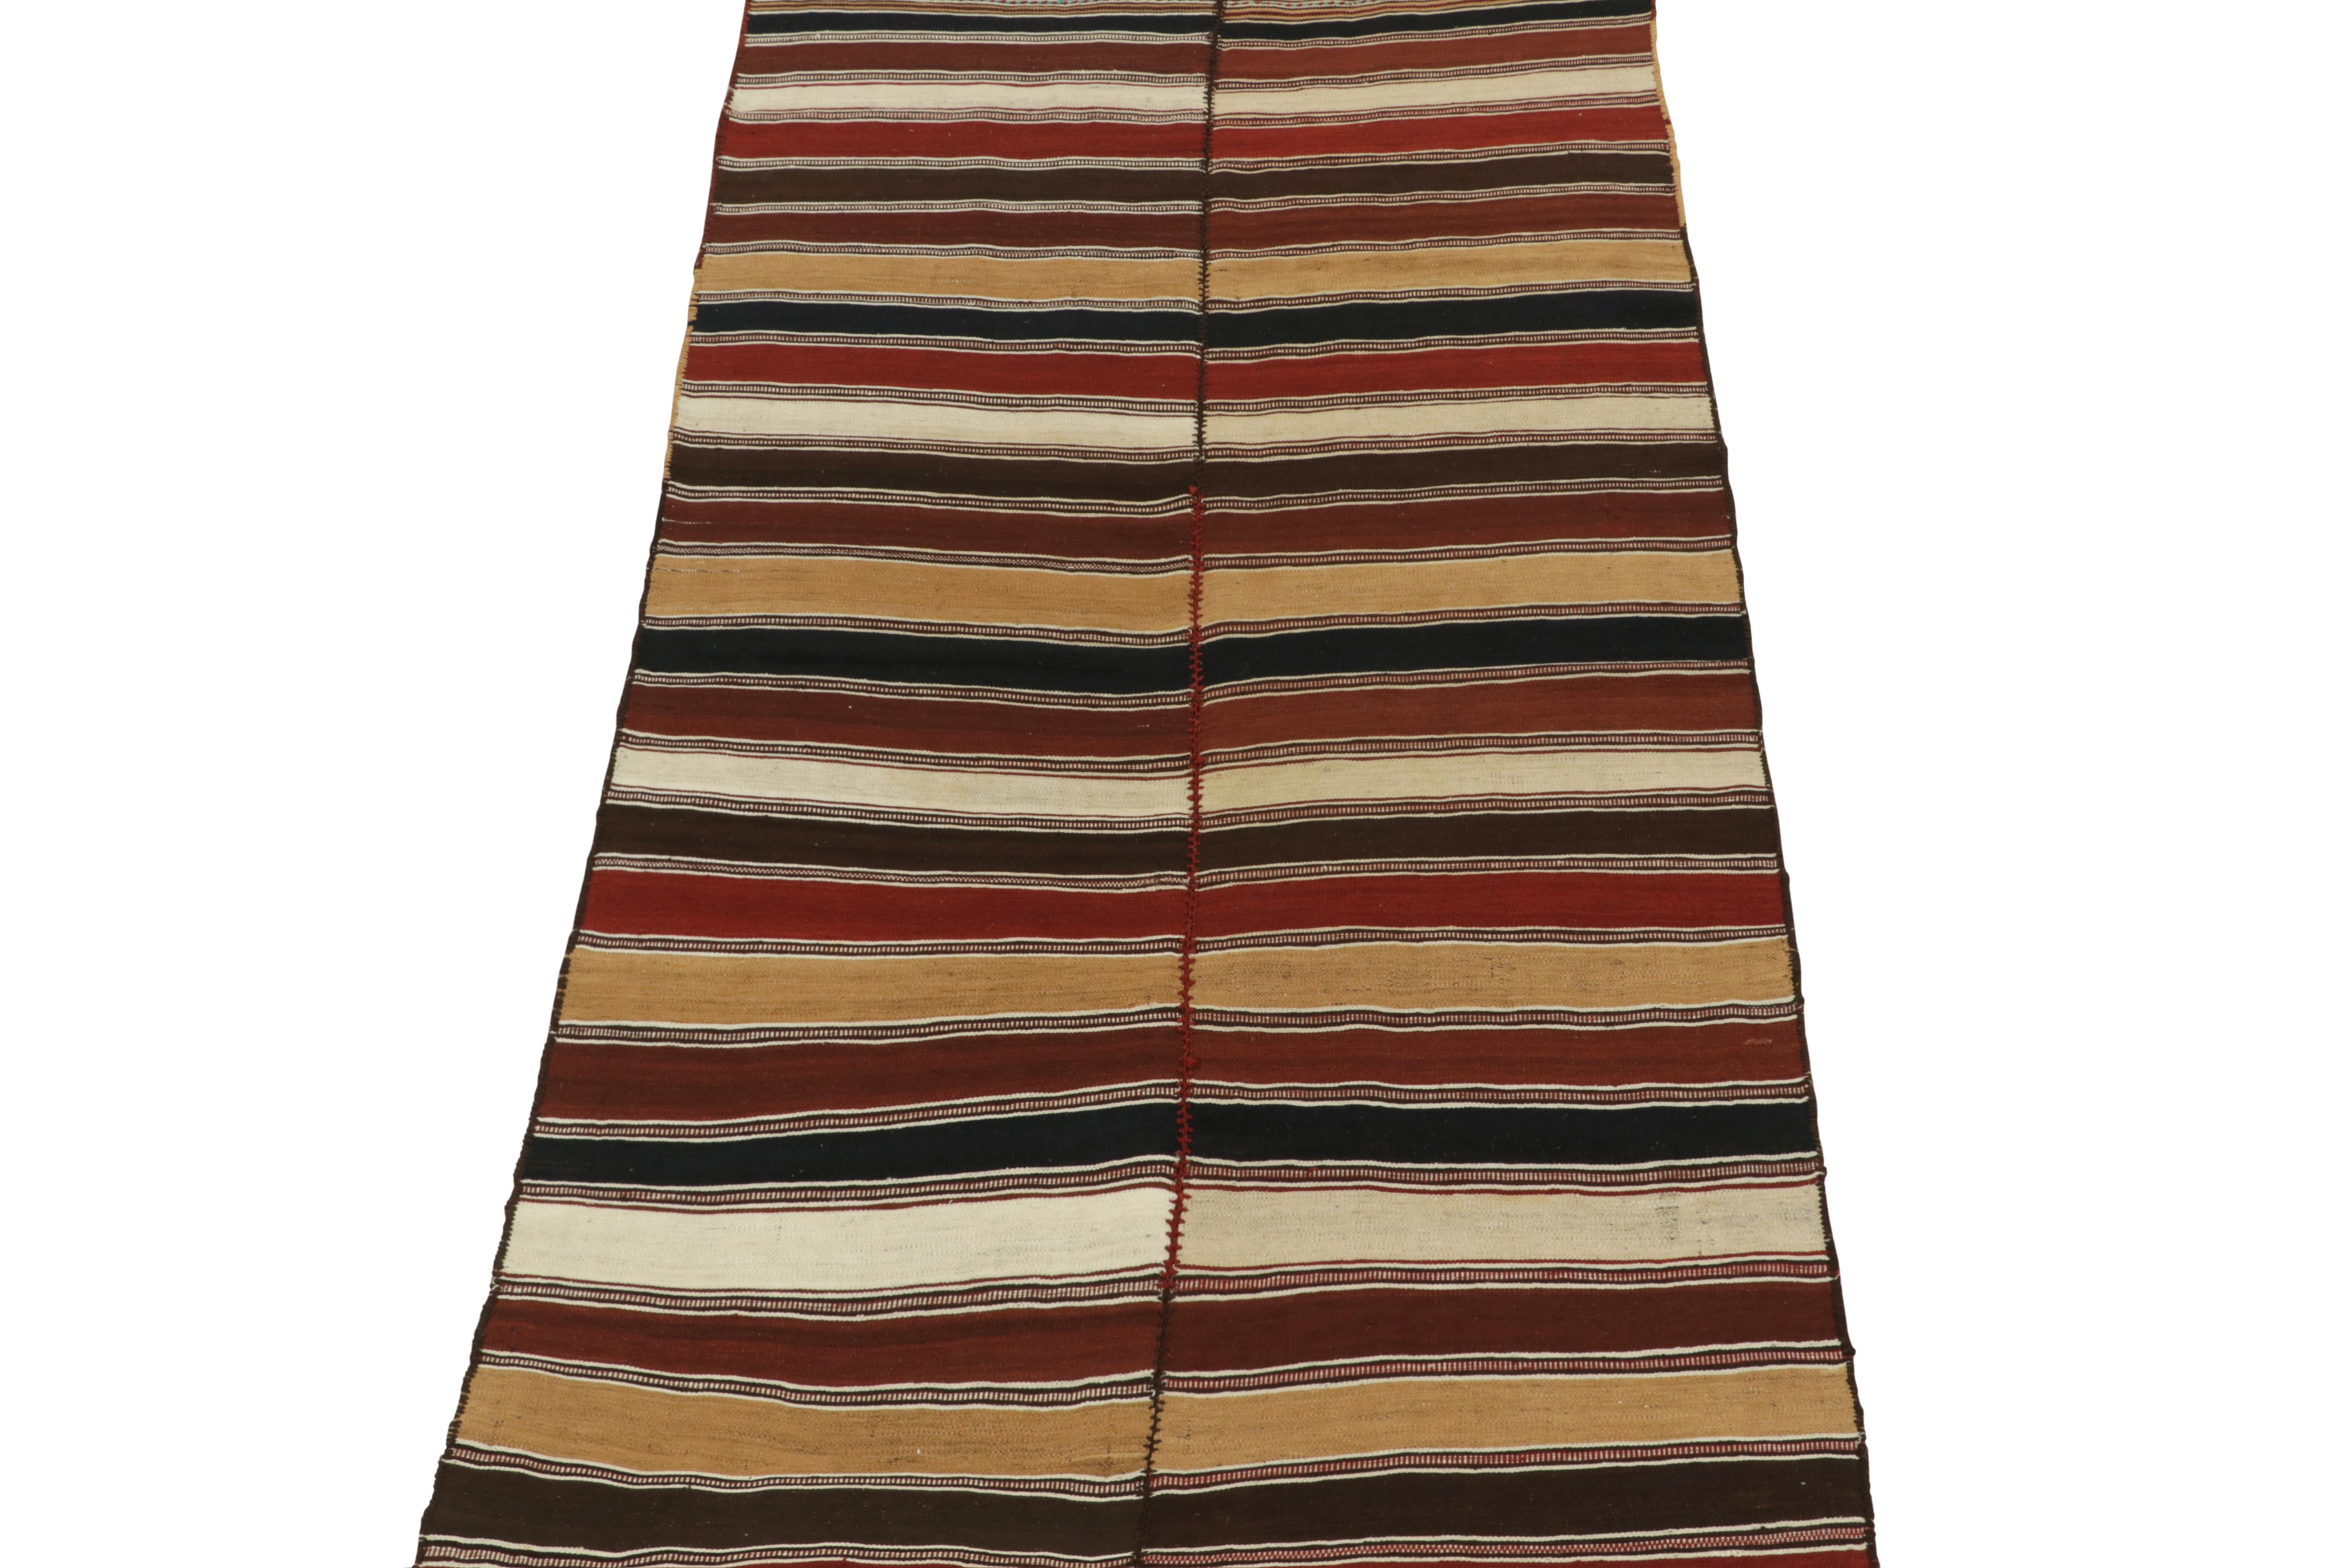 Dieser persische Mazandaran-Kilim im Format 5x9 ist ein Neuzugang in den seltenen Stammesausstellungen von Rug & Kilim. Handgewebt in Wolle, ca. 1940-1950.

Weiter zum Design: 

Dieser Mazandaran-Kelim ist eine Interpretation eines der ältesten